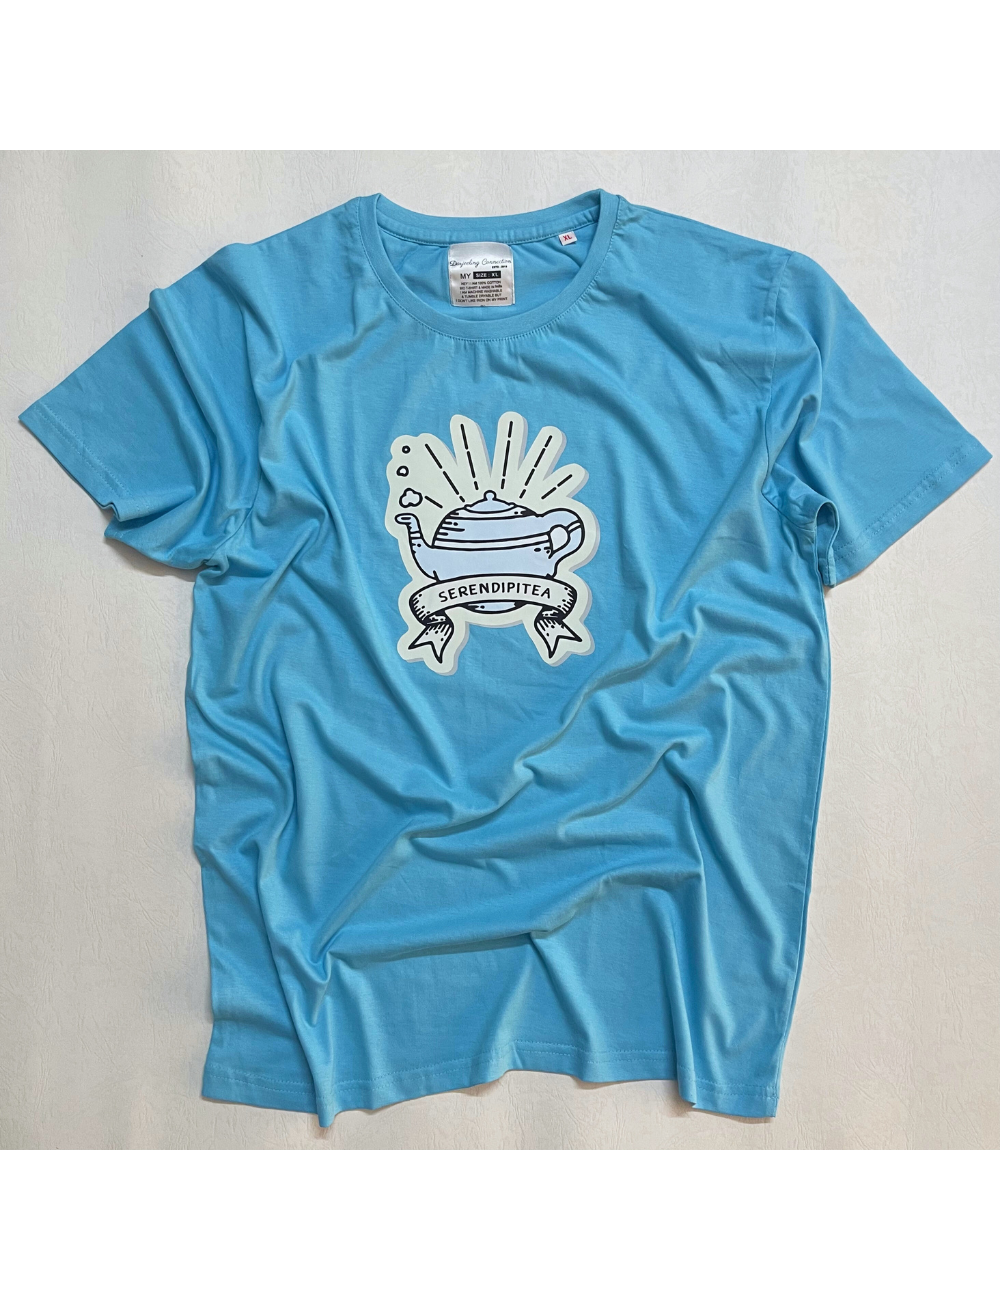 Serendipitea - Sky Blue - Regular Fit 100% Cotton T-Shirt